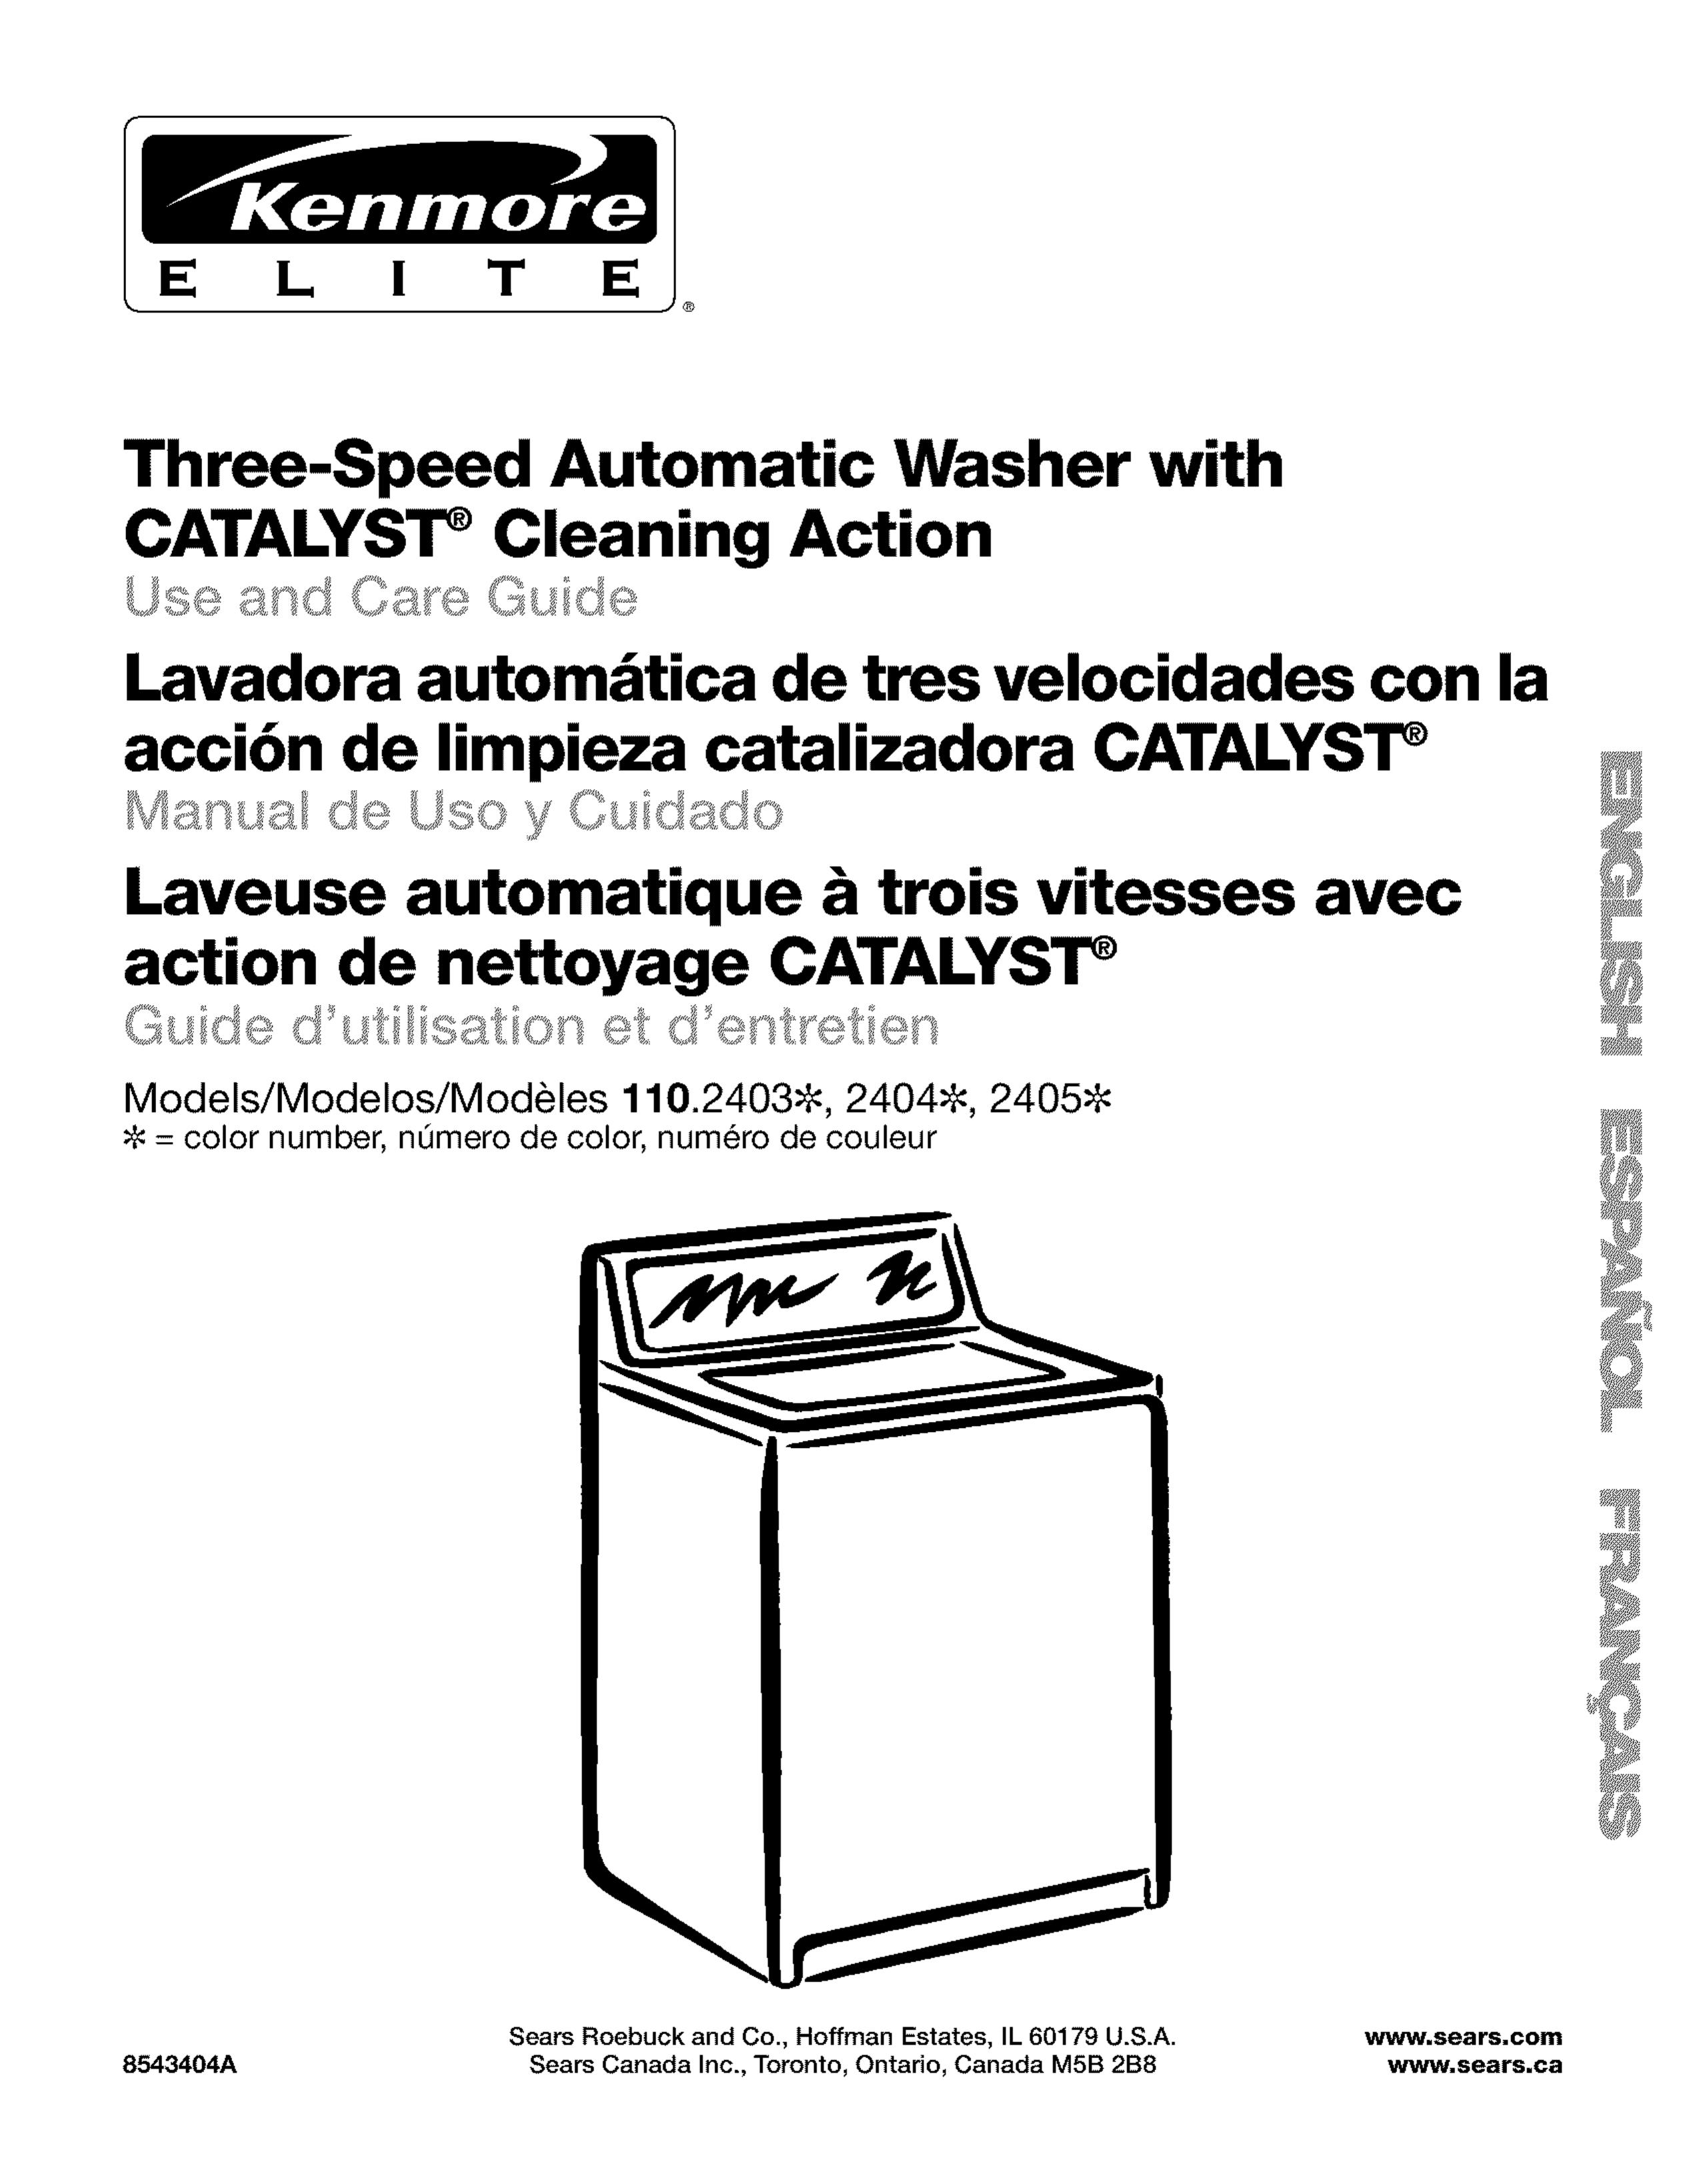 Kenmore 110.2405# Washer User Manual